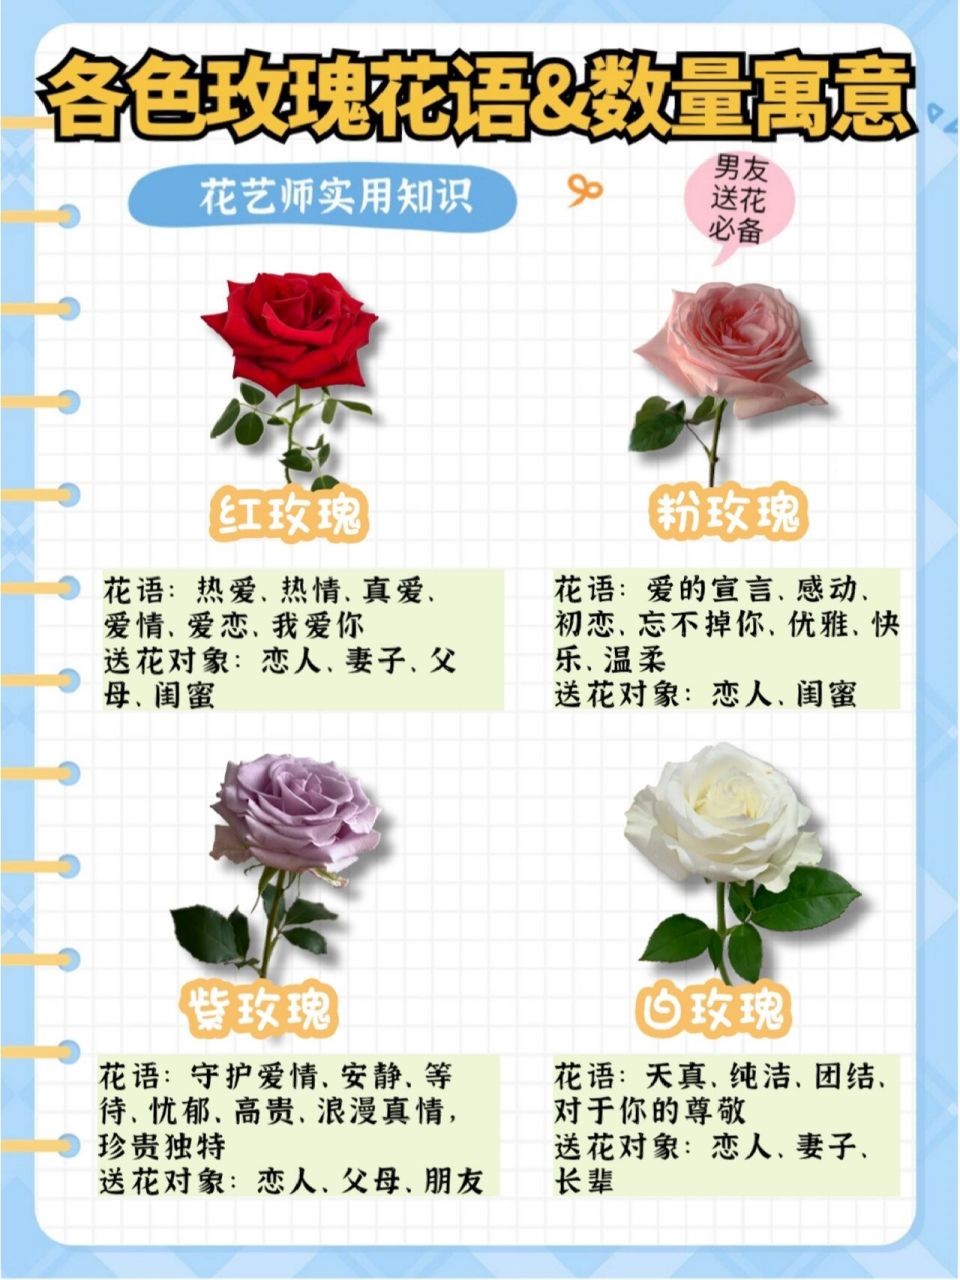 100种玫瑰花的名字图片